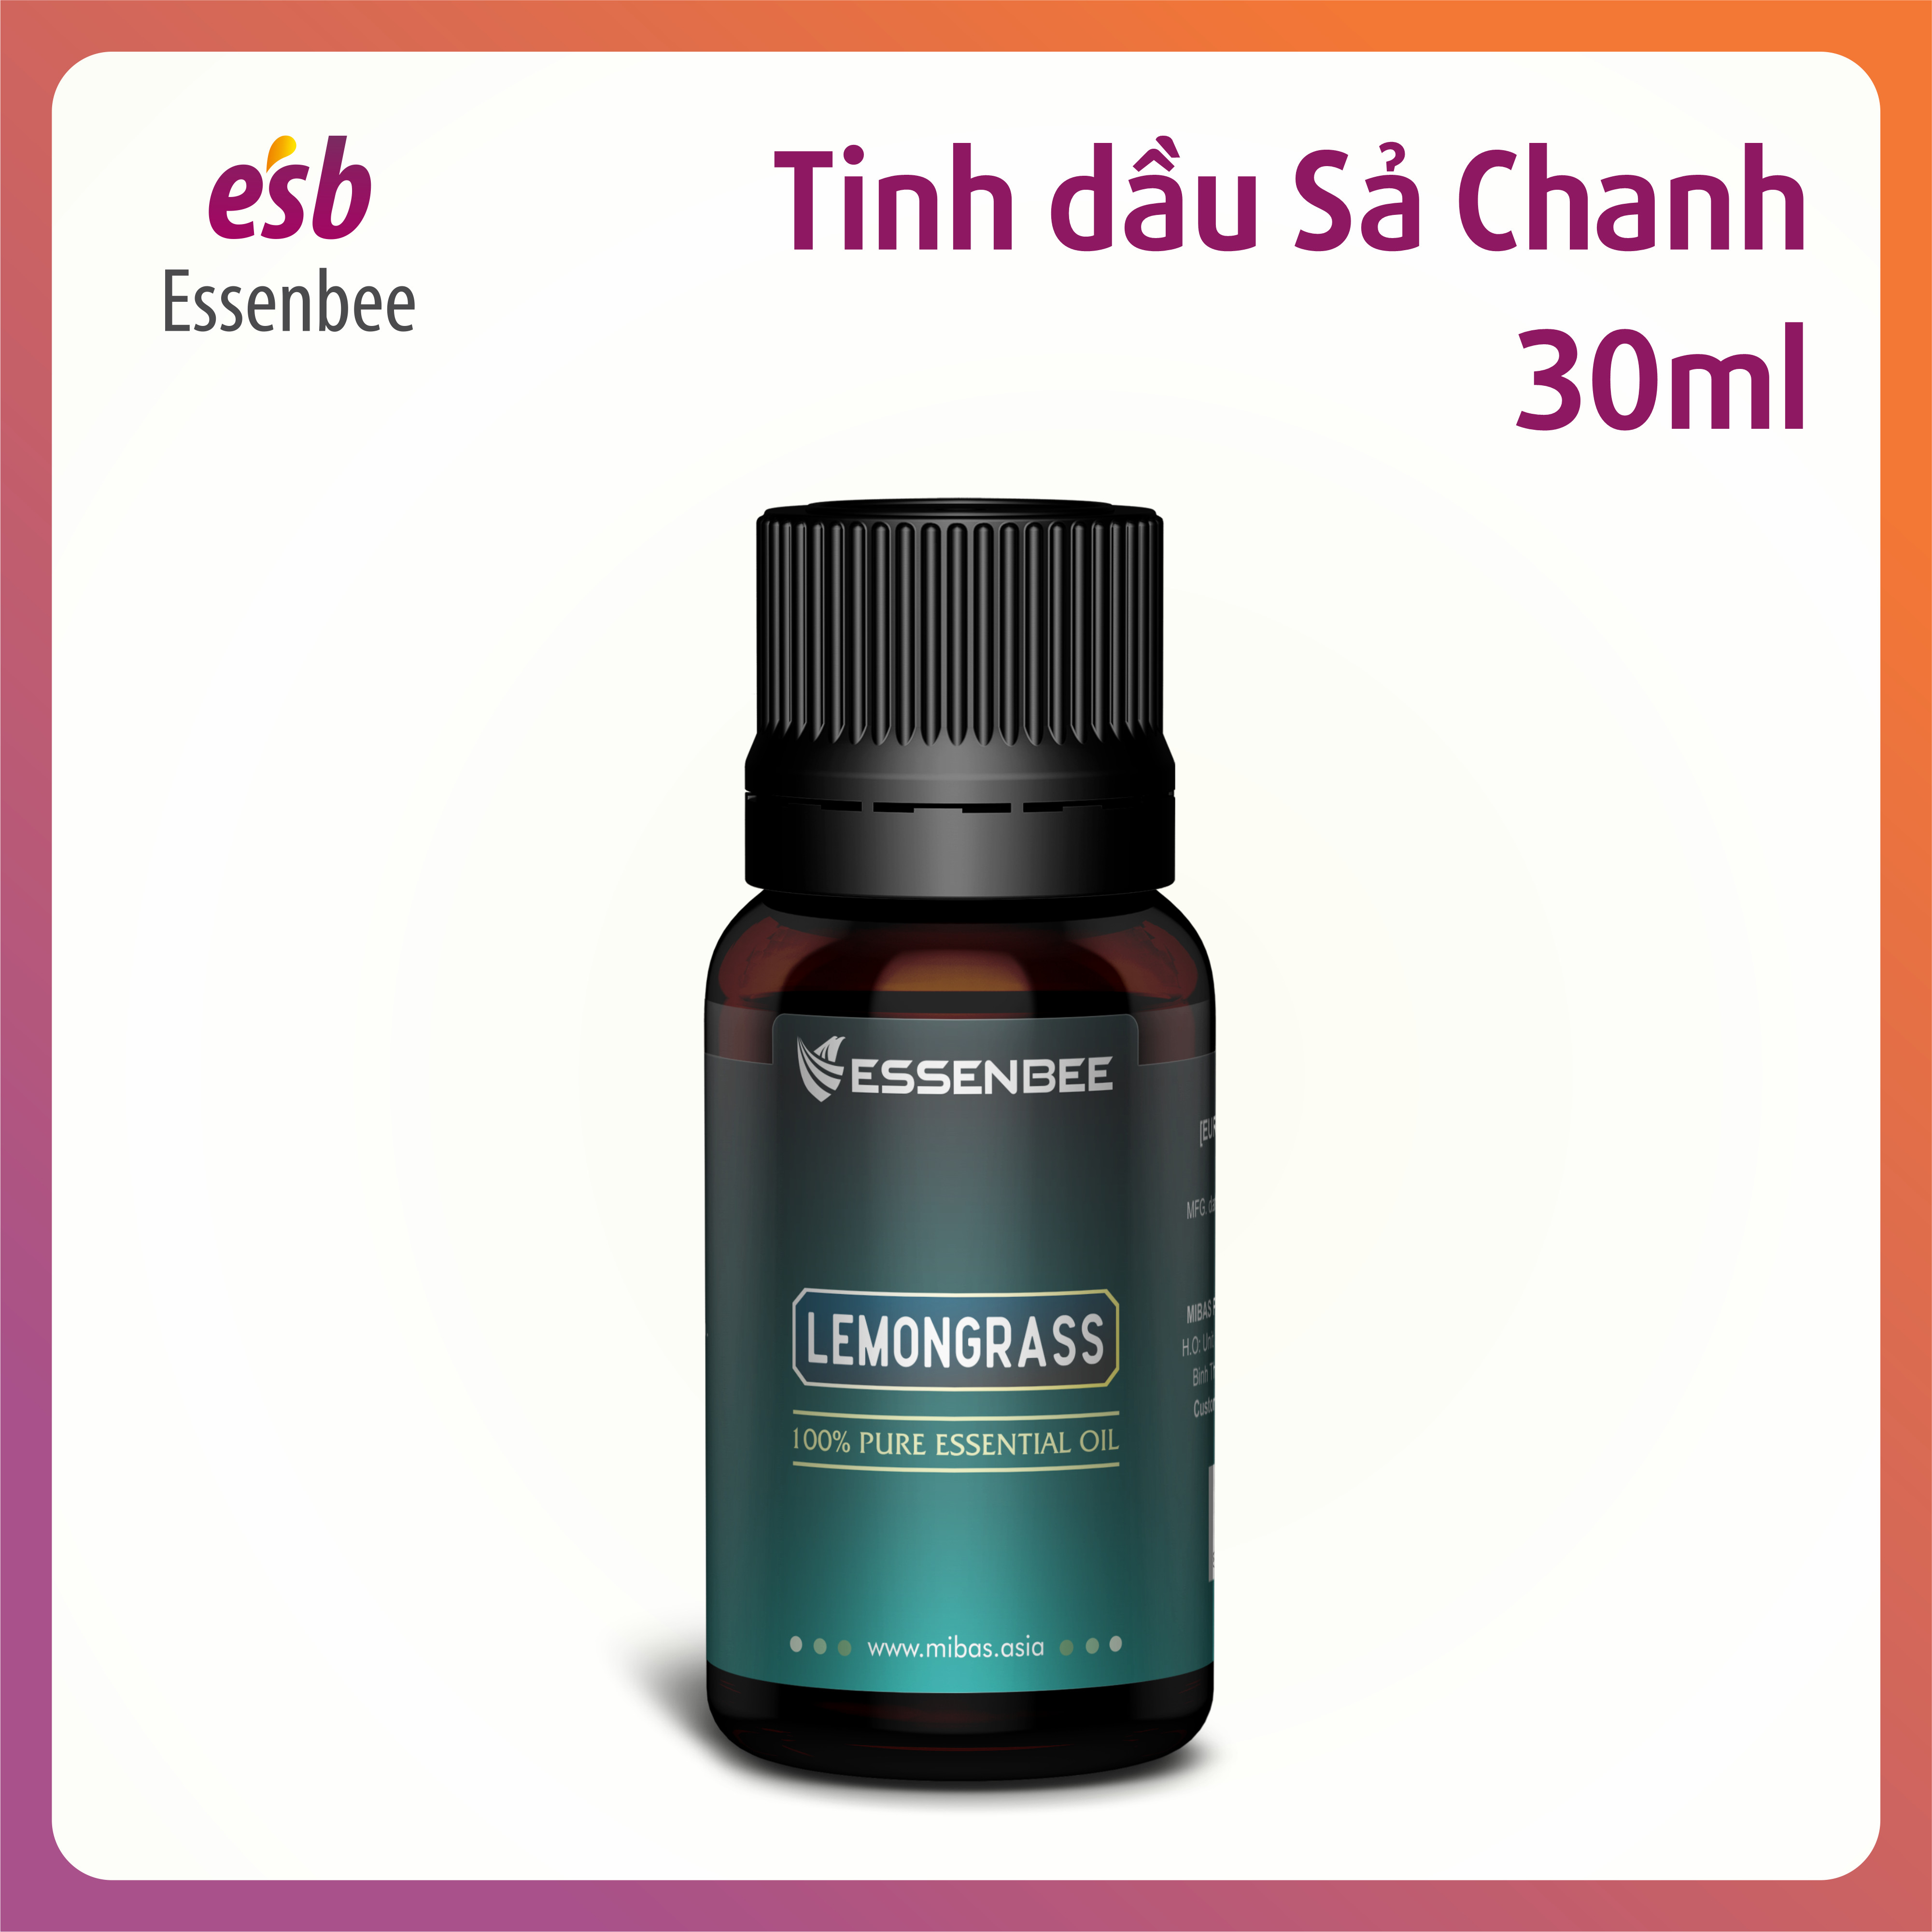 Tinh dầu thiên nhiên Sả Chanh - Essenbee - 30ml - Giúp thư giãn tinh thần, giảm stress, xua đuổi côn trùng và muỗi, an toàn cho trẻ em